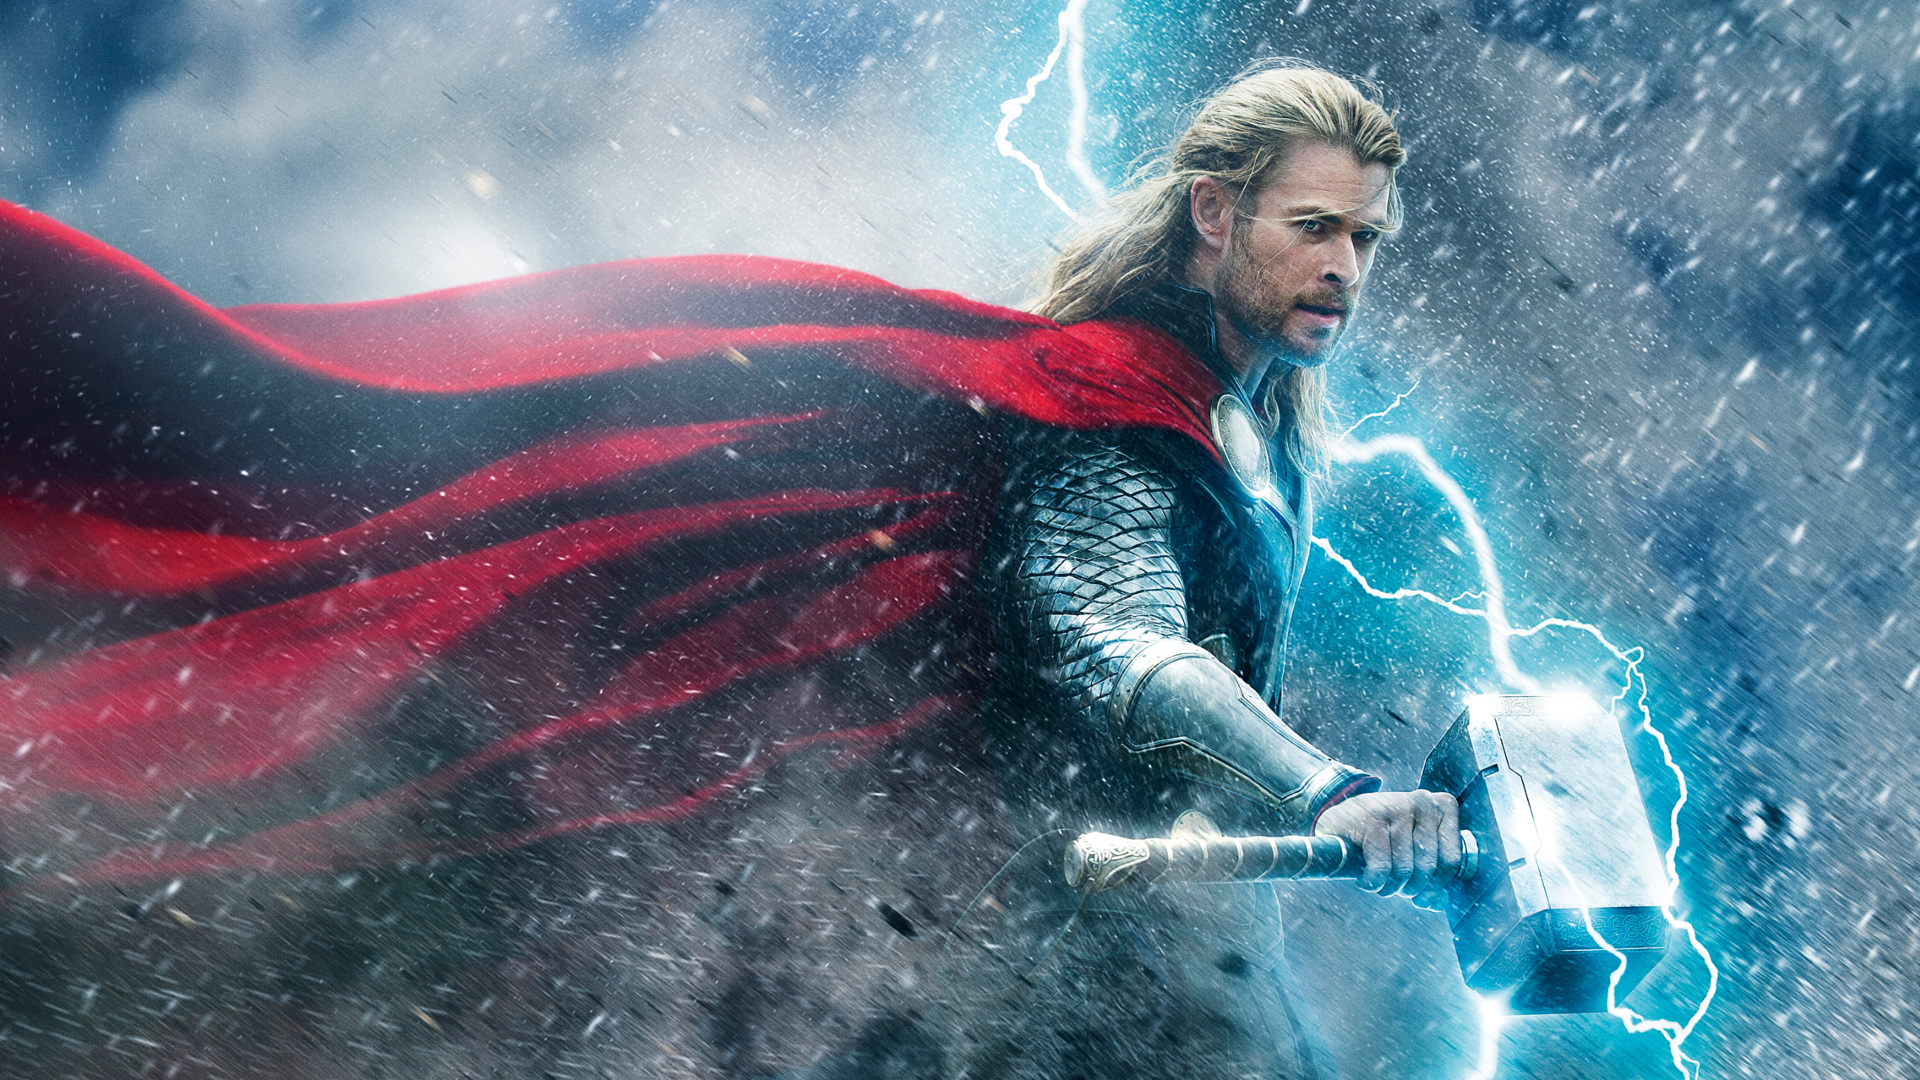 Thor Thor 2 The Dark World Thor Ragnarok Avengers Endgame Avengers Infinity War Avengers Age Of Ultr 1920x1080